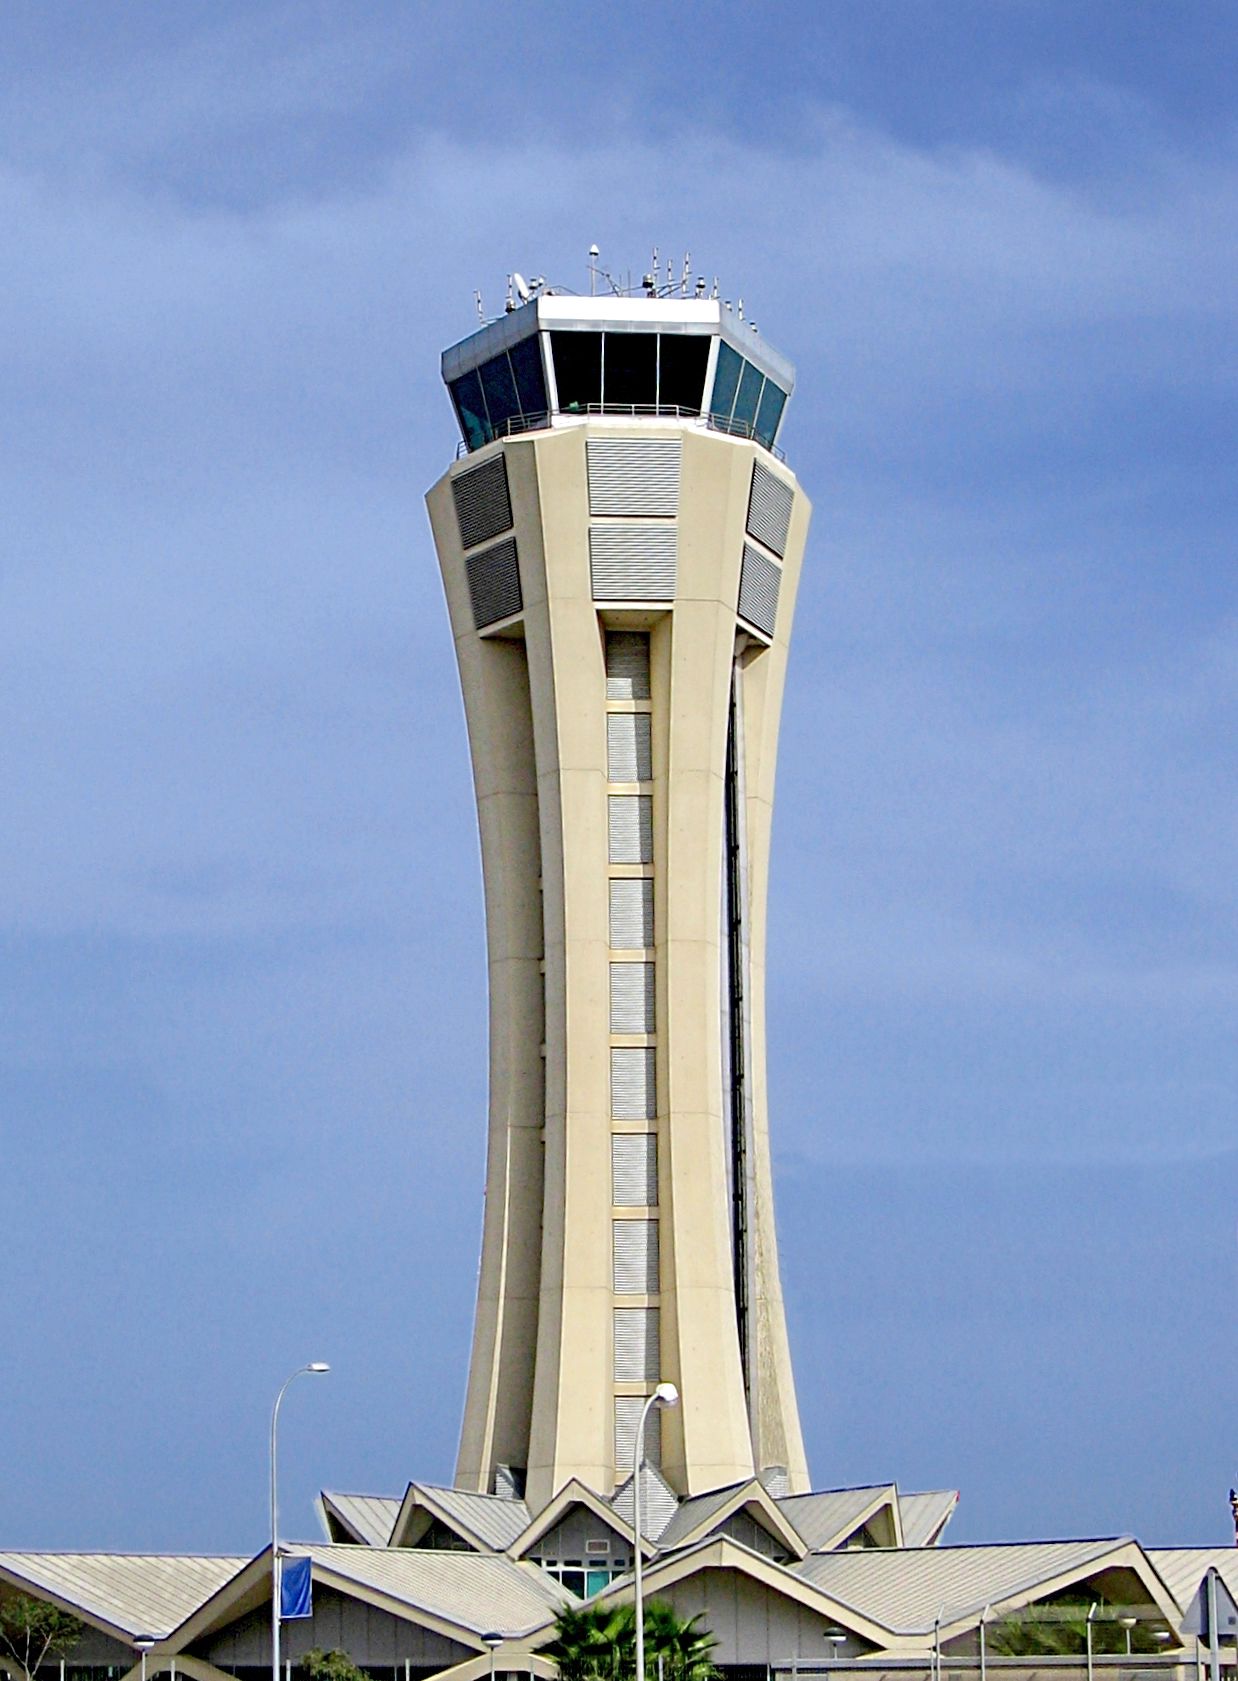 Malaga Airport ATC tower